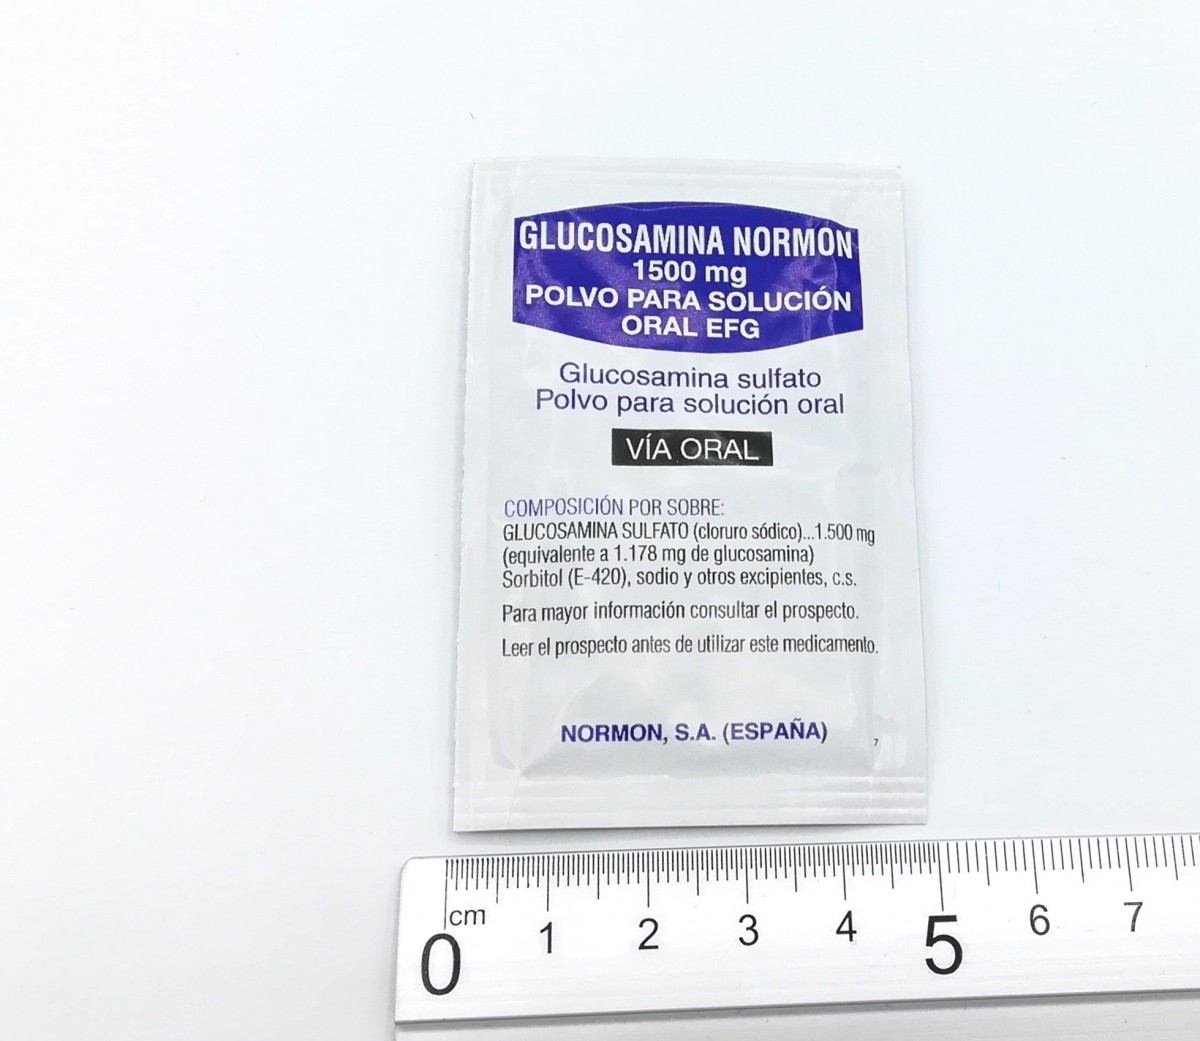 GLUCOSAMINA NORMON 1500 mg POLVO PARA SOLUCION ORAL EFG, 30 sobres fotografía de la forma farmacéutica.